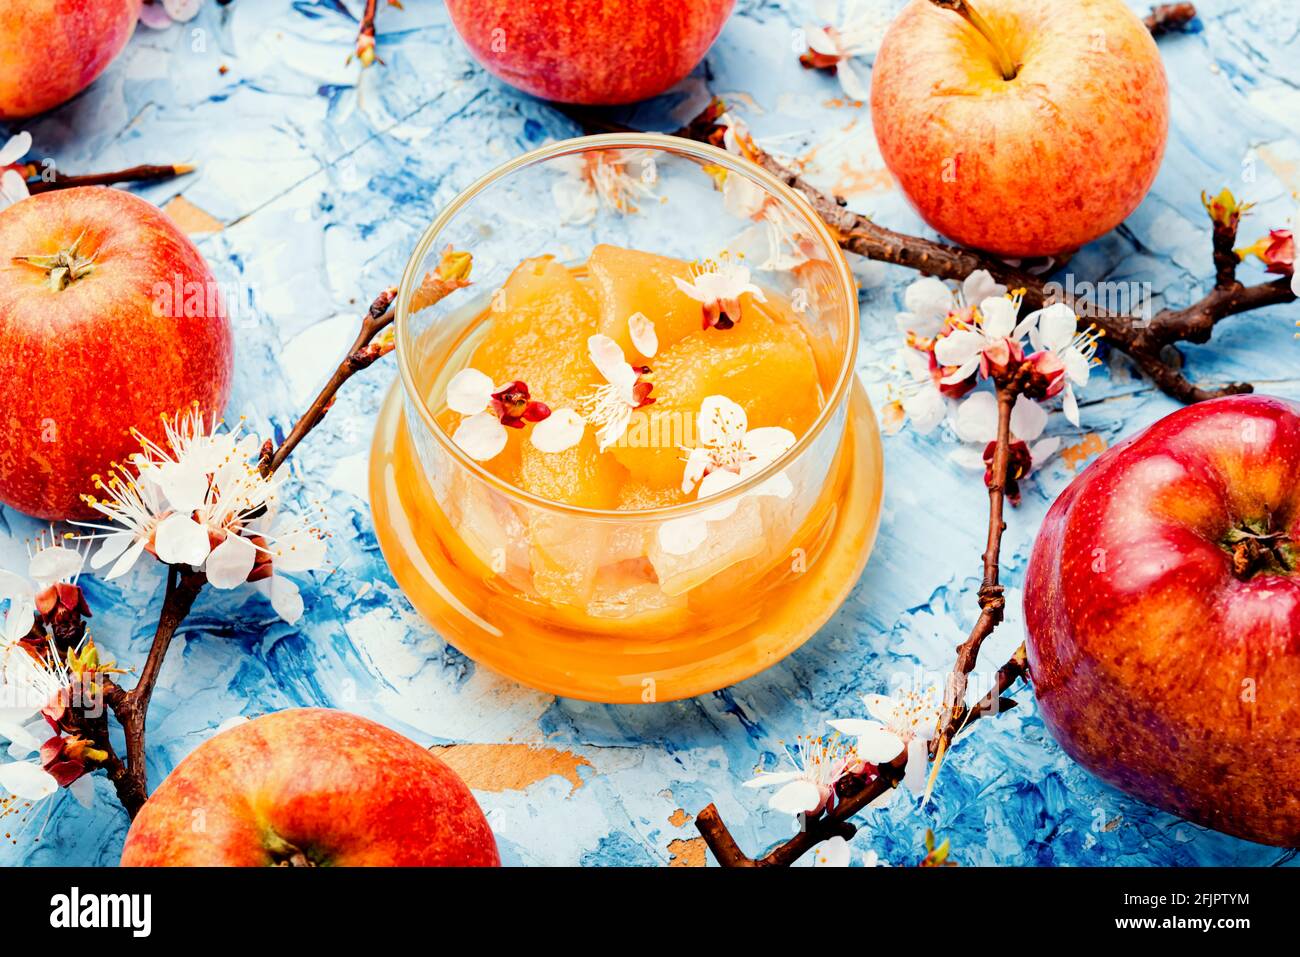 Natürliche Apfelmarmelade oder Apfelmarmelade in einem Glas Stockfoto